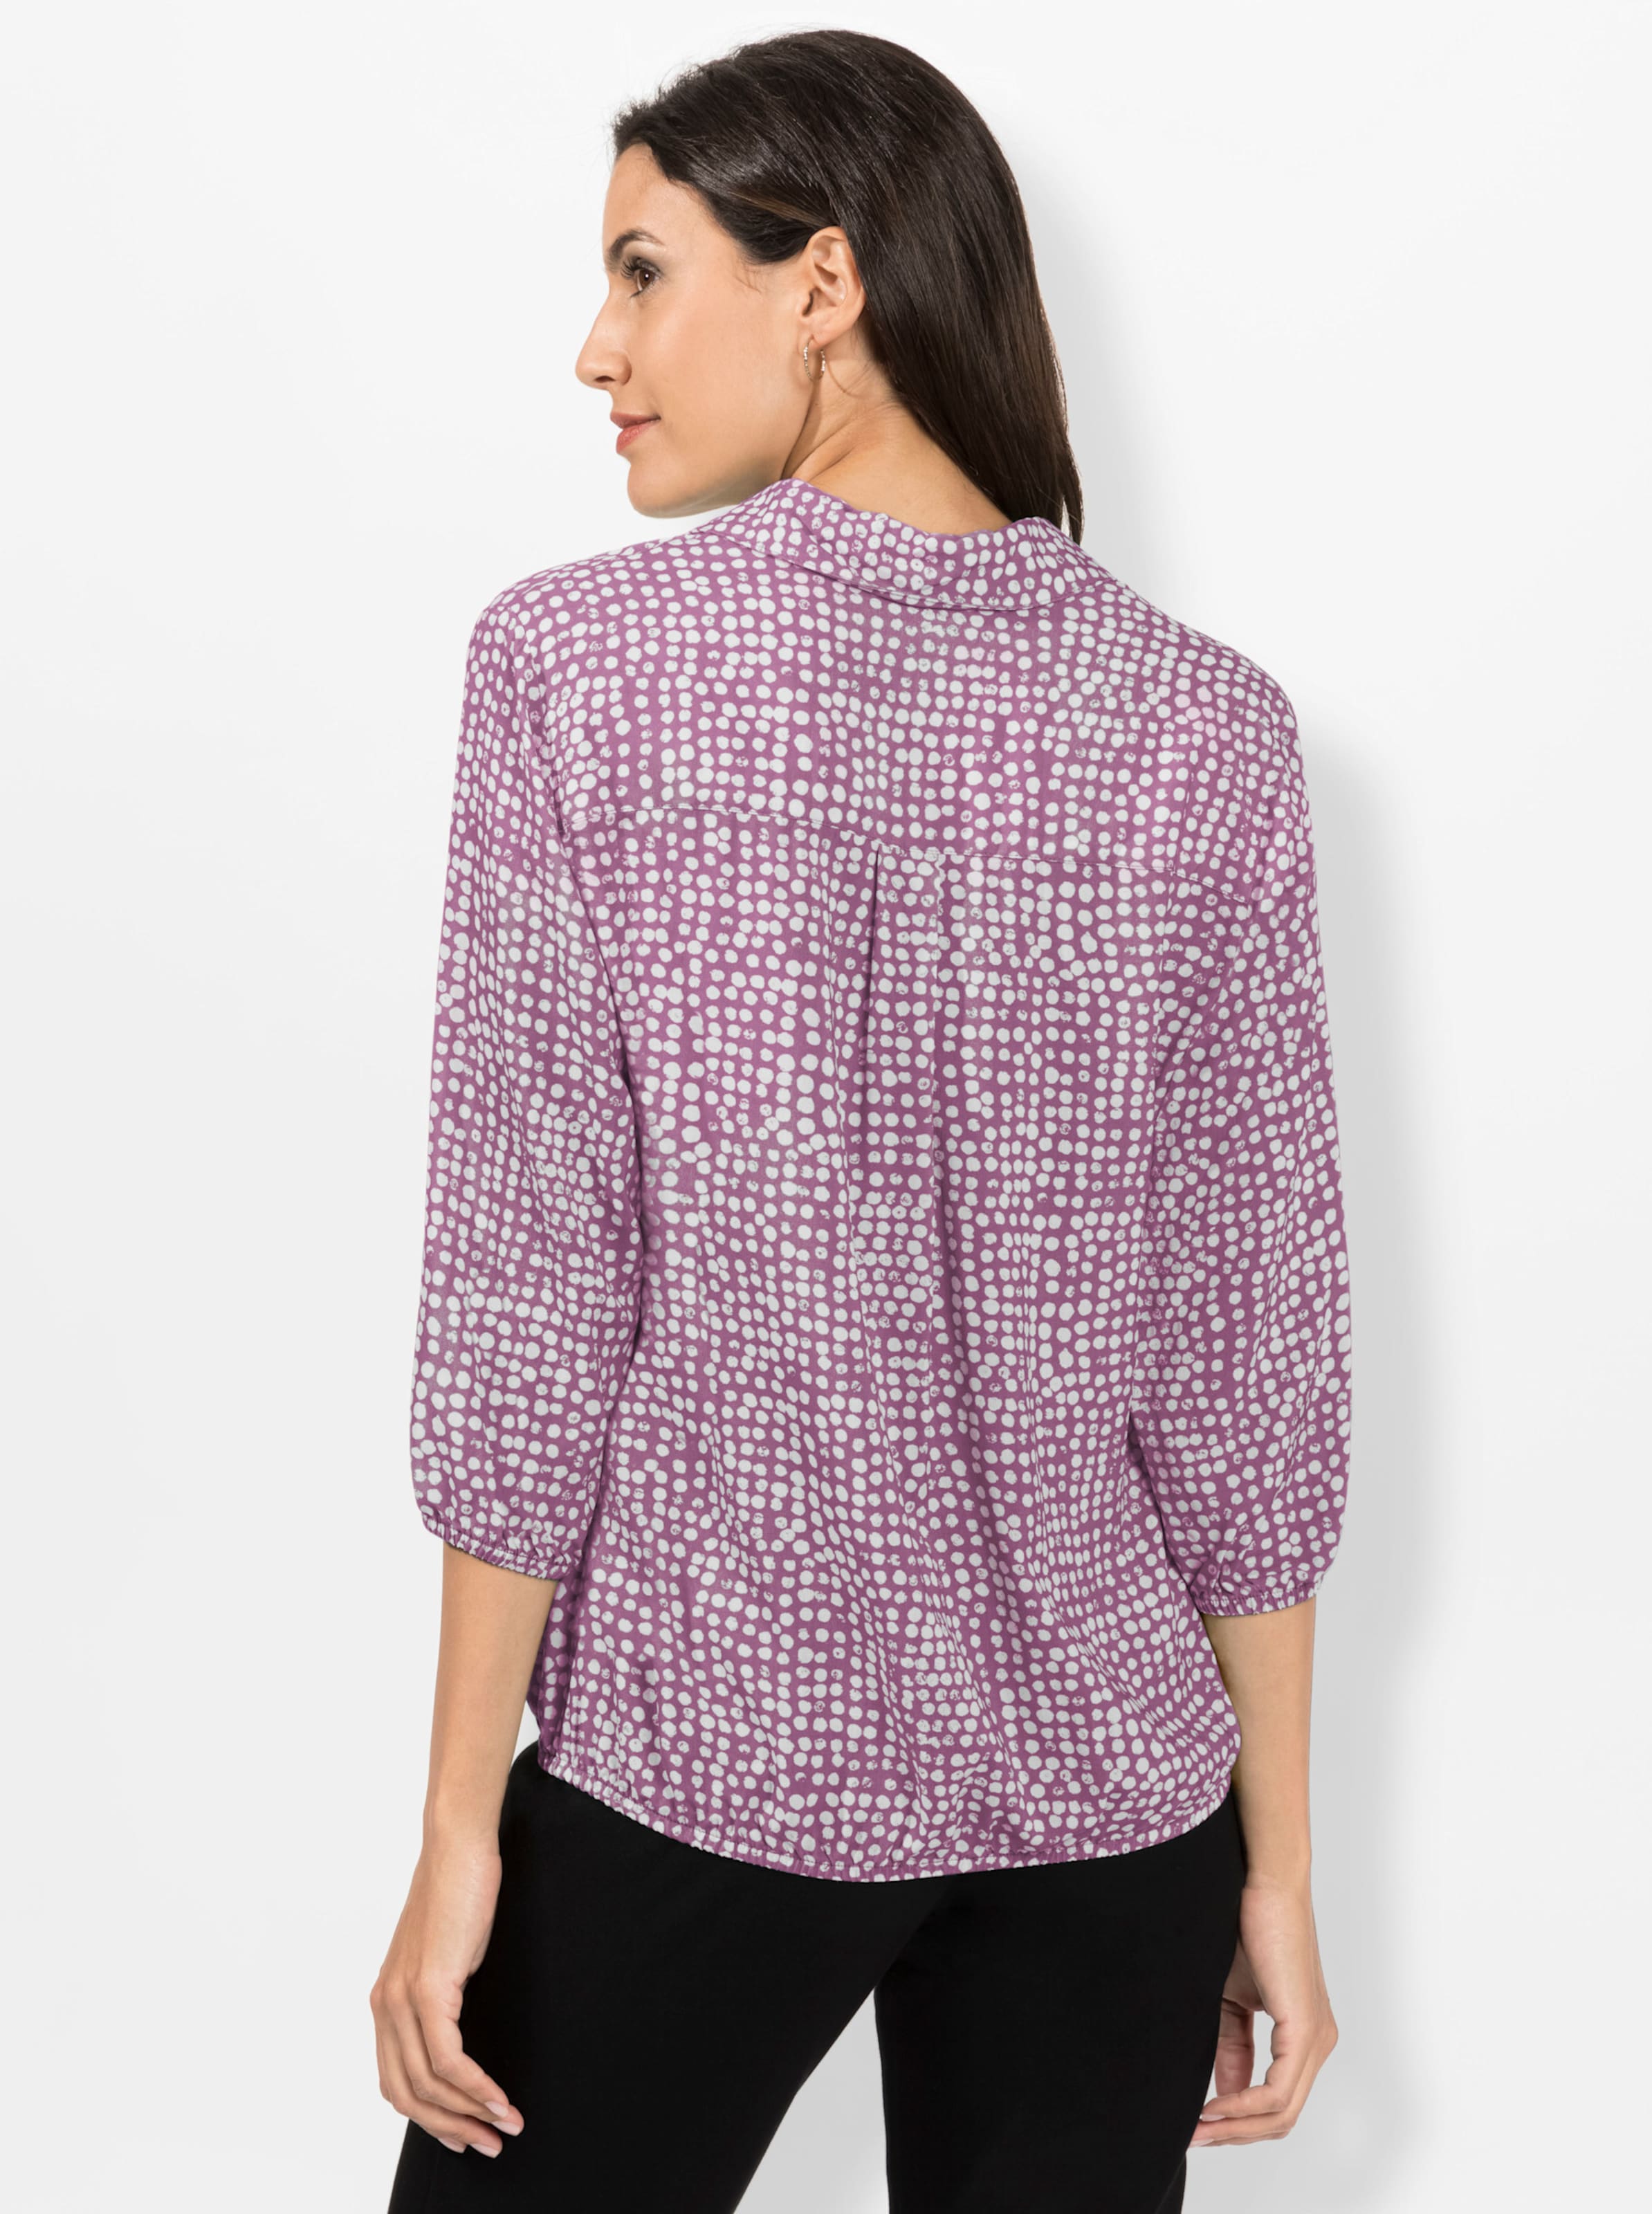 Die schimmernden günstig Kaufen-Bluse in violett-weiß-bedruckt von heine. Bluse in violett-weiß-bedruckt von heine <![CDATA[Minimal-Muster sind ein Muss! Mit dieser allover bedruckten Bluse sind Sie immer schick angezogen. Mit offenem Hemdkragen und schimmernden Knöpfen an de